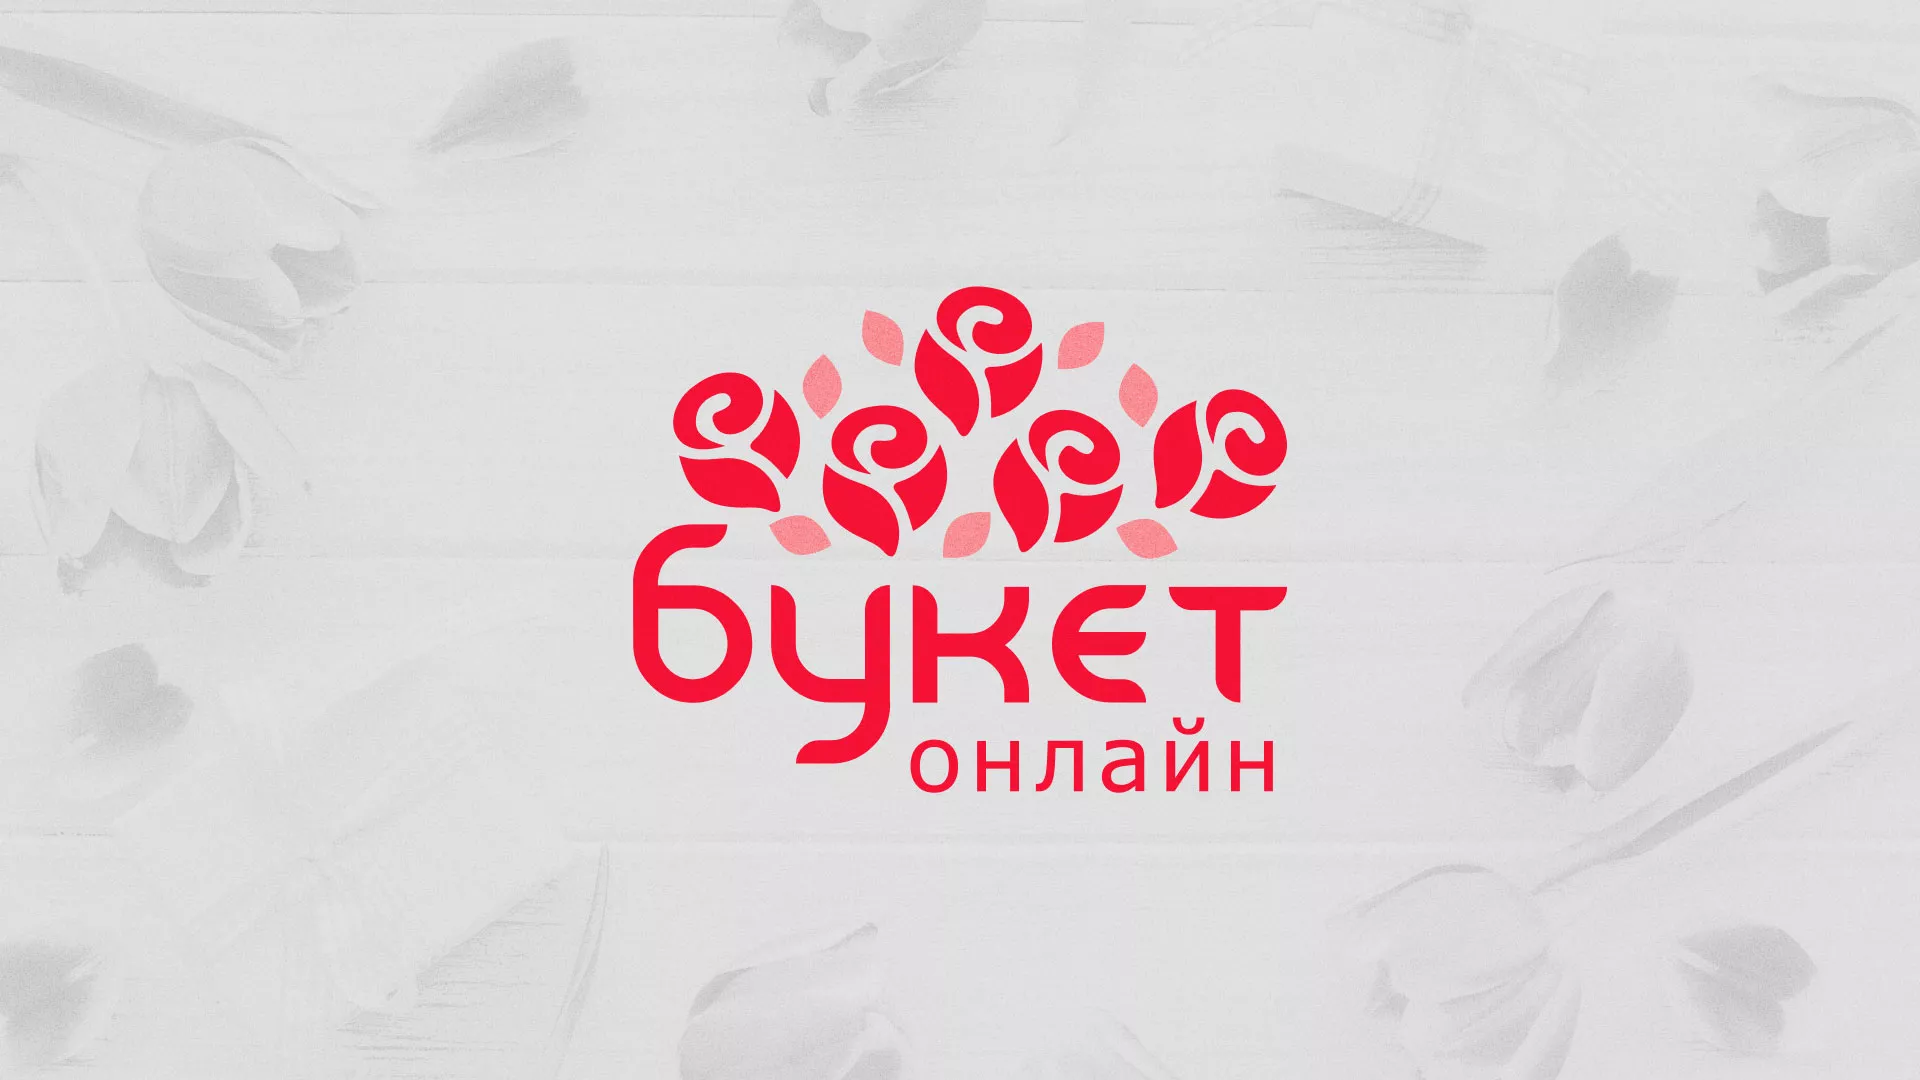 Создание интернет-магазина «Букет-онлайн» по цветам в Боброве